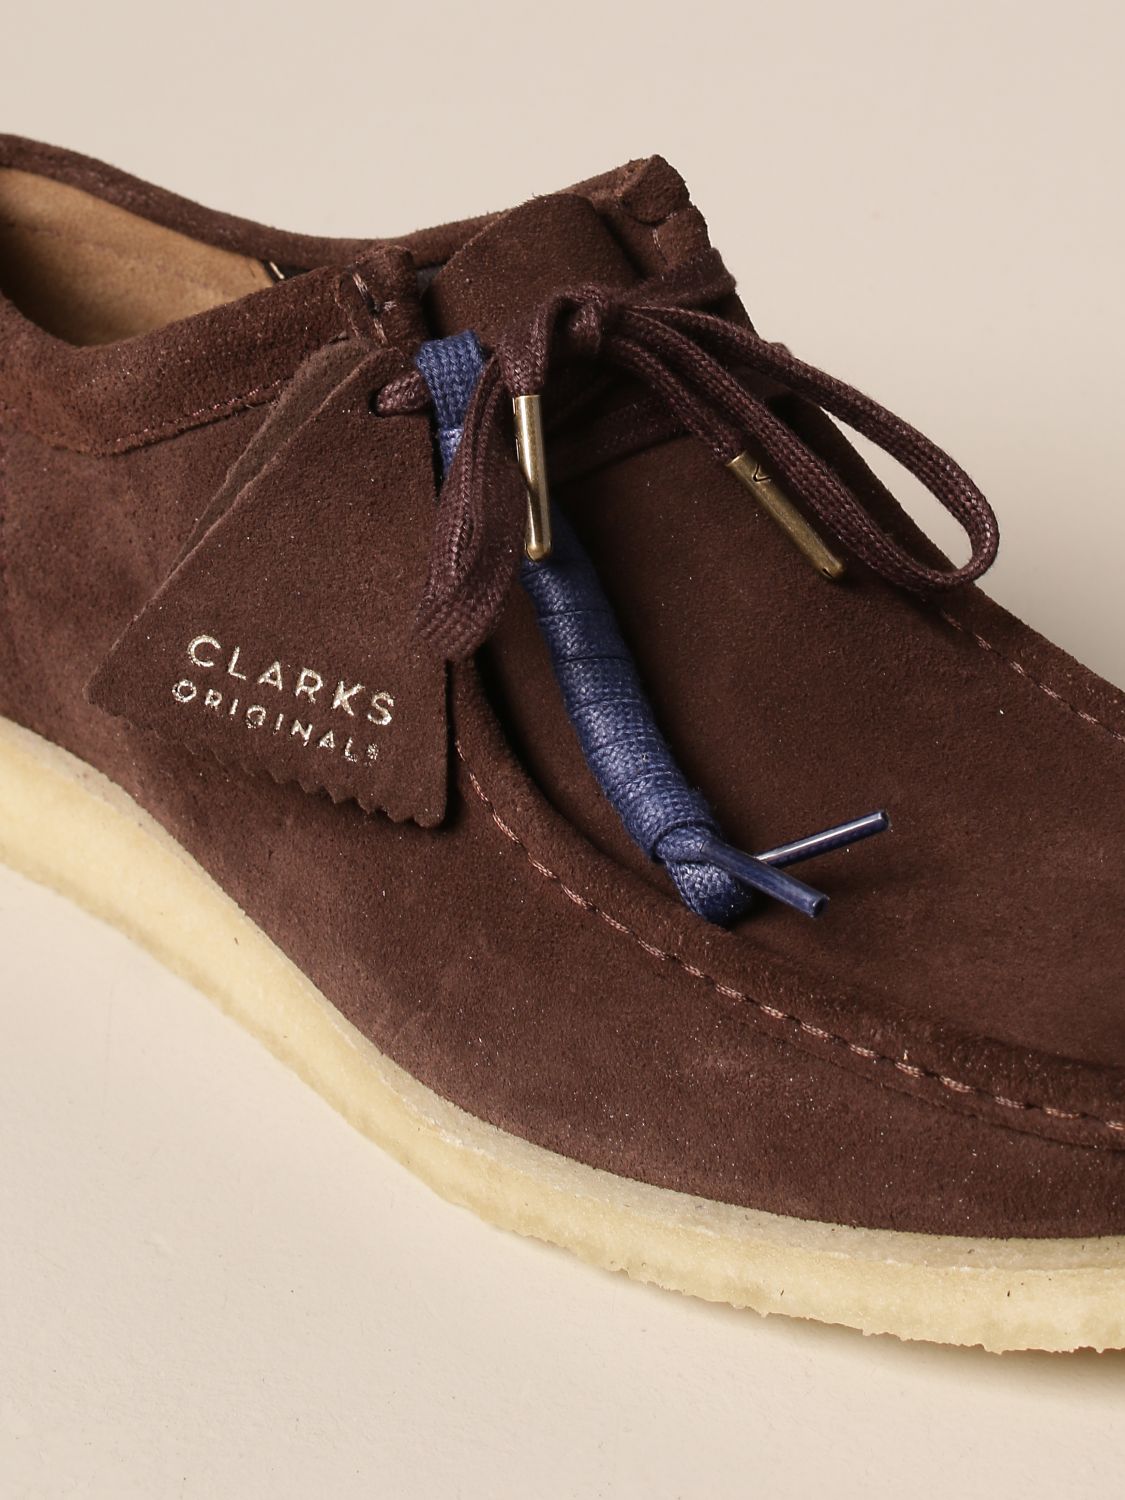 clarks original shoes